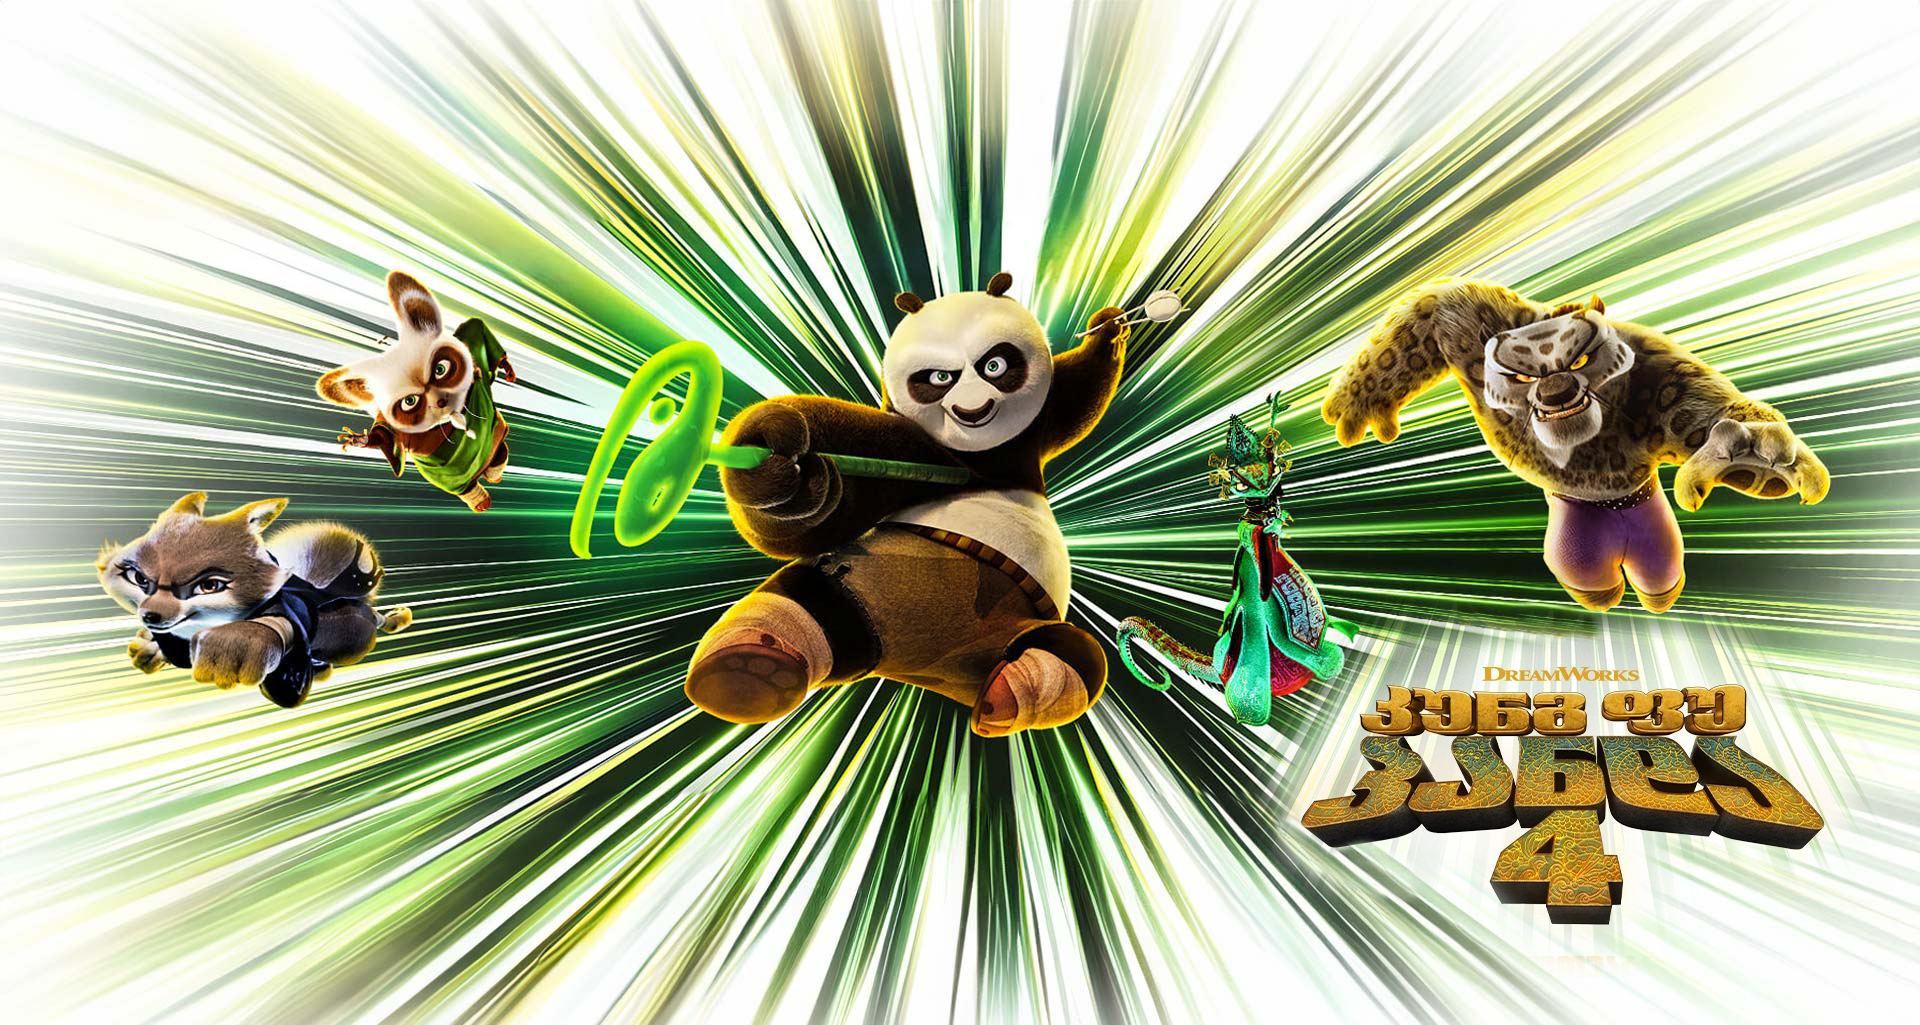 კუნგ ფუ პანდა 4 / Kung Fu Panda 4